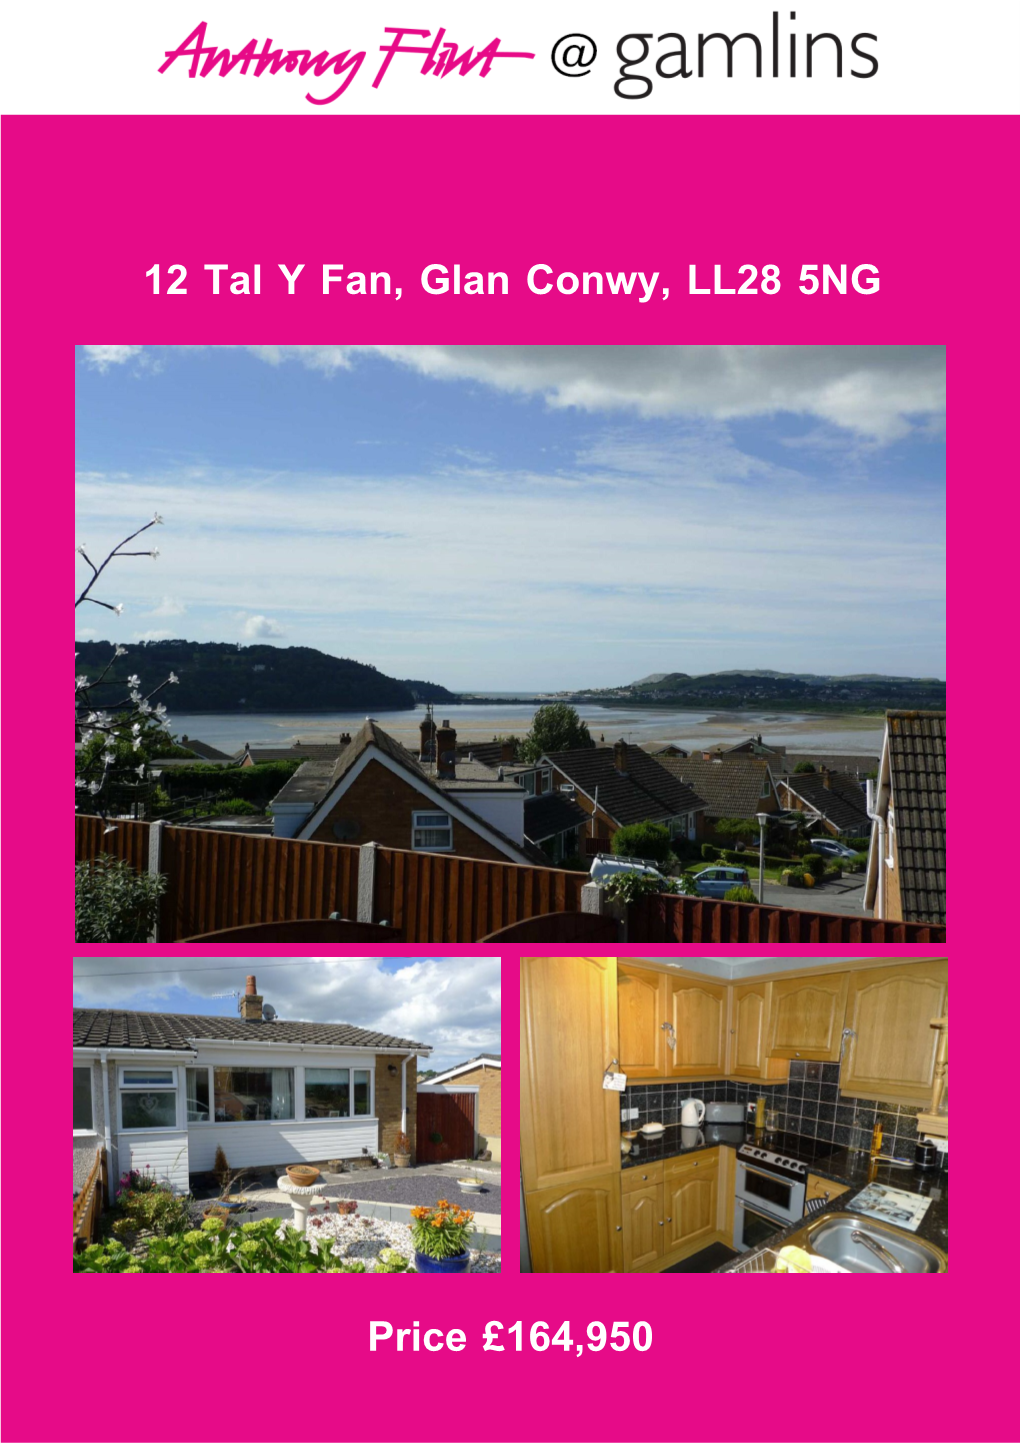 12 Tal Y Fan, Glan Conwy, LL28 5NG Price £164,950